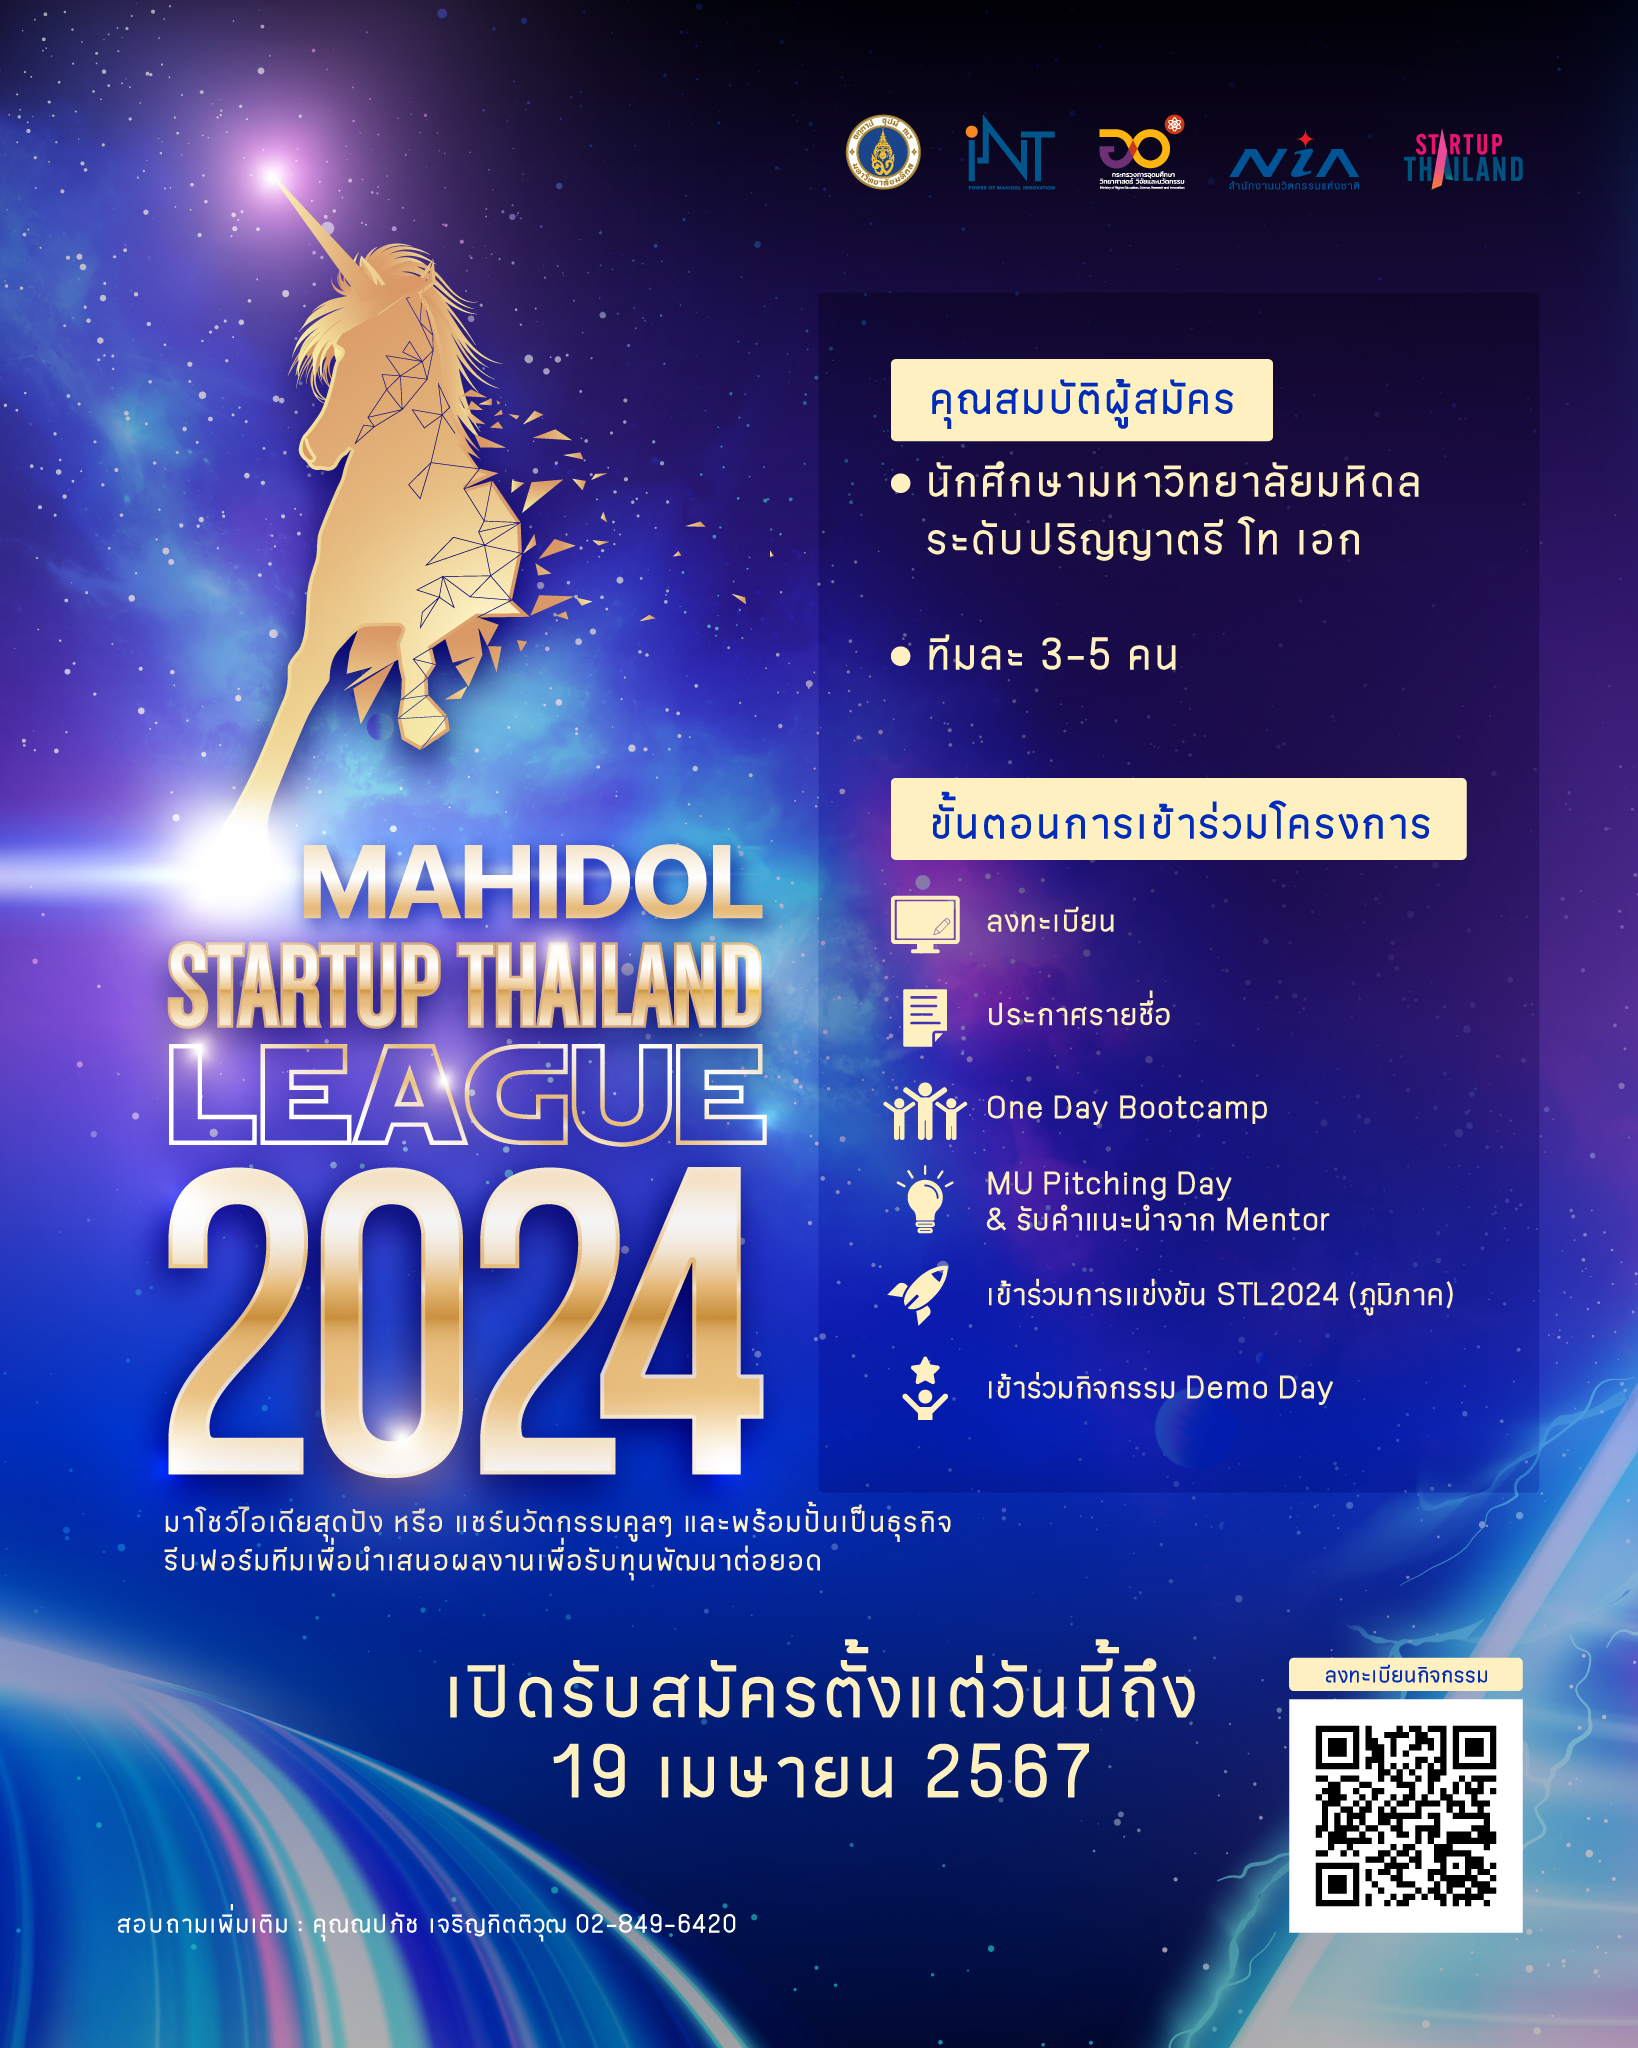 สถาบันบริหารจัดการเทคโนโลยีและนวัตกรรม (iNT) ขอเชิญชวนนักศึกษาปริญญาตรี-เอก ที่มีไอเดียสร้างสรรค์ และสนใจการเป็นผู้ประกอบการ เข้าร่วมแข่งขันบนเส้นทาง Startup ไปกับเรา ในโครงการ “Mahidol Startup Thailand League 2024” พร้อมชิงเงินทุนในการนำไปพัฒนาต่อยอดผลงาน